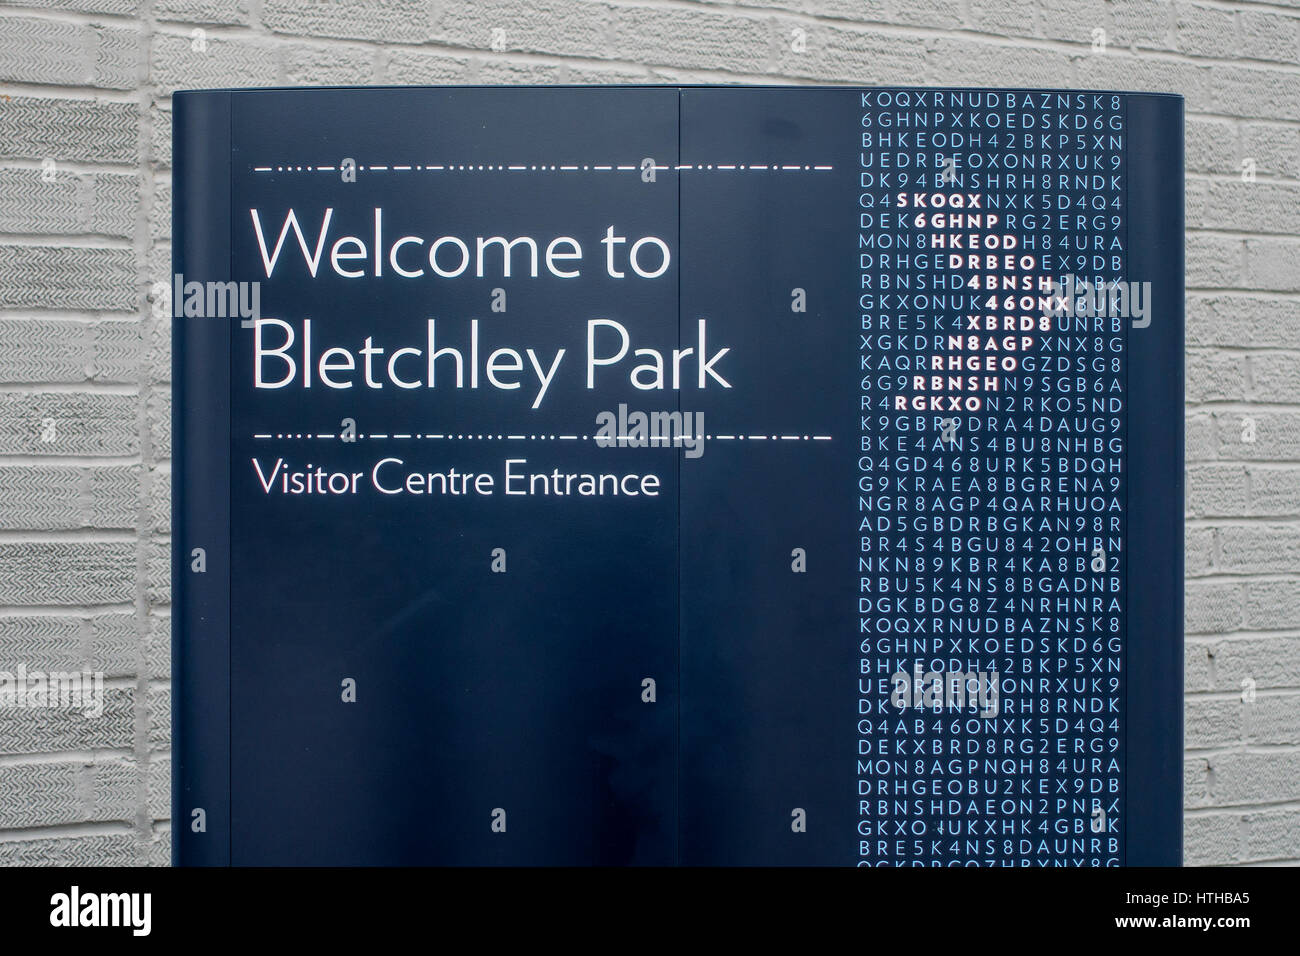 Herzlich Willkommen Sie in Bletchley Park Weltkrieg zwei Code brechen Zentrum Buckinghamshire UK Stockfoto